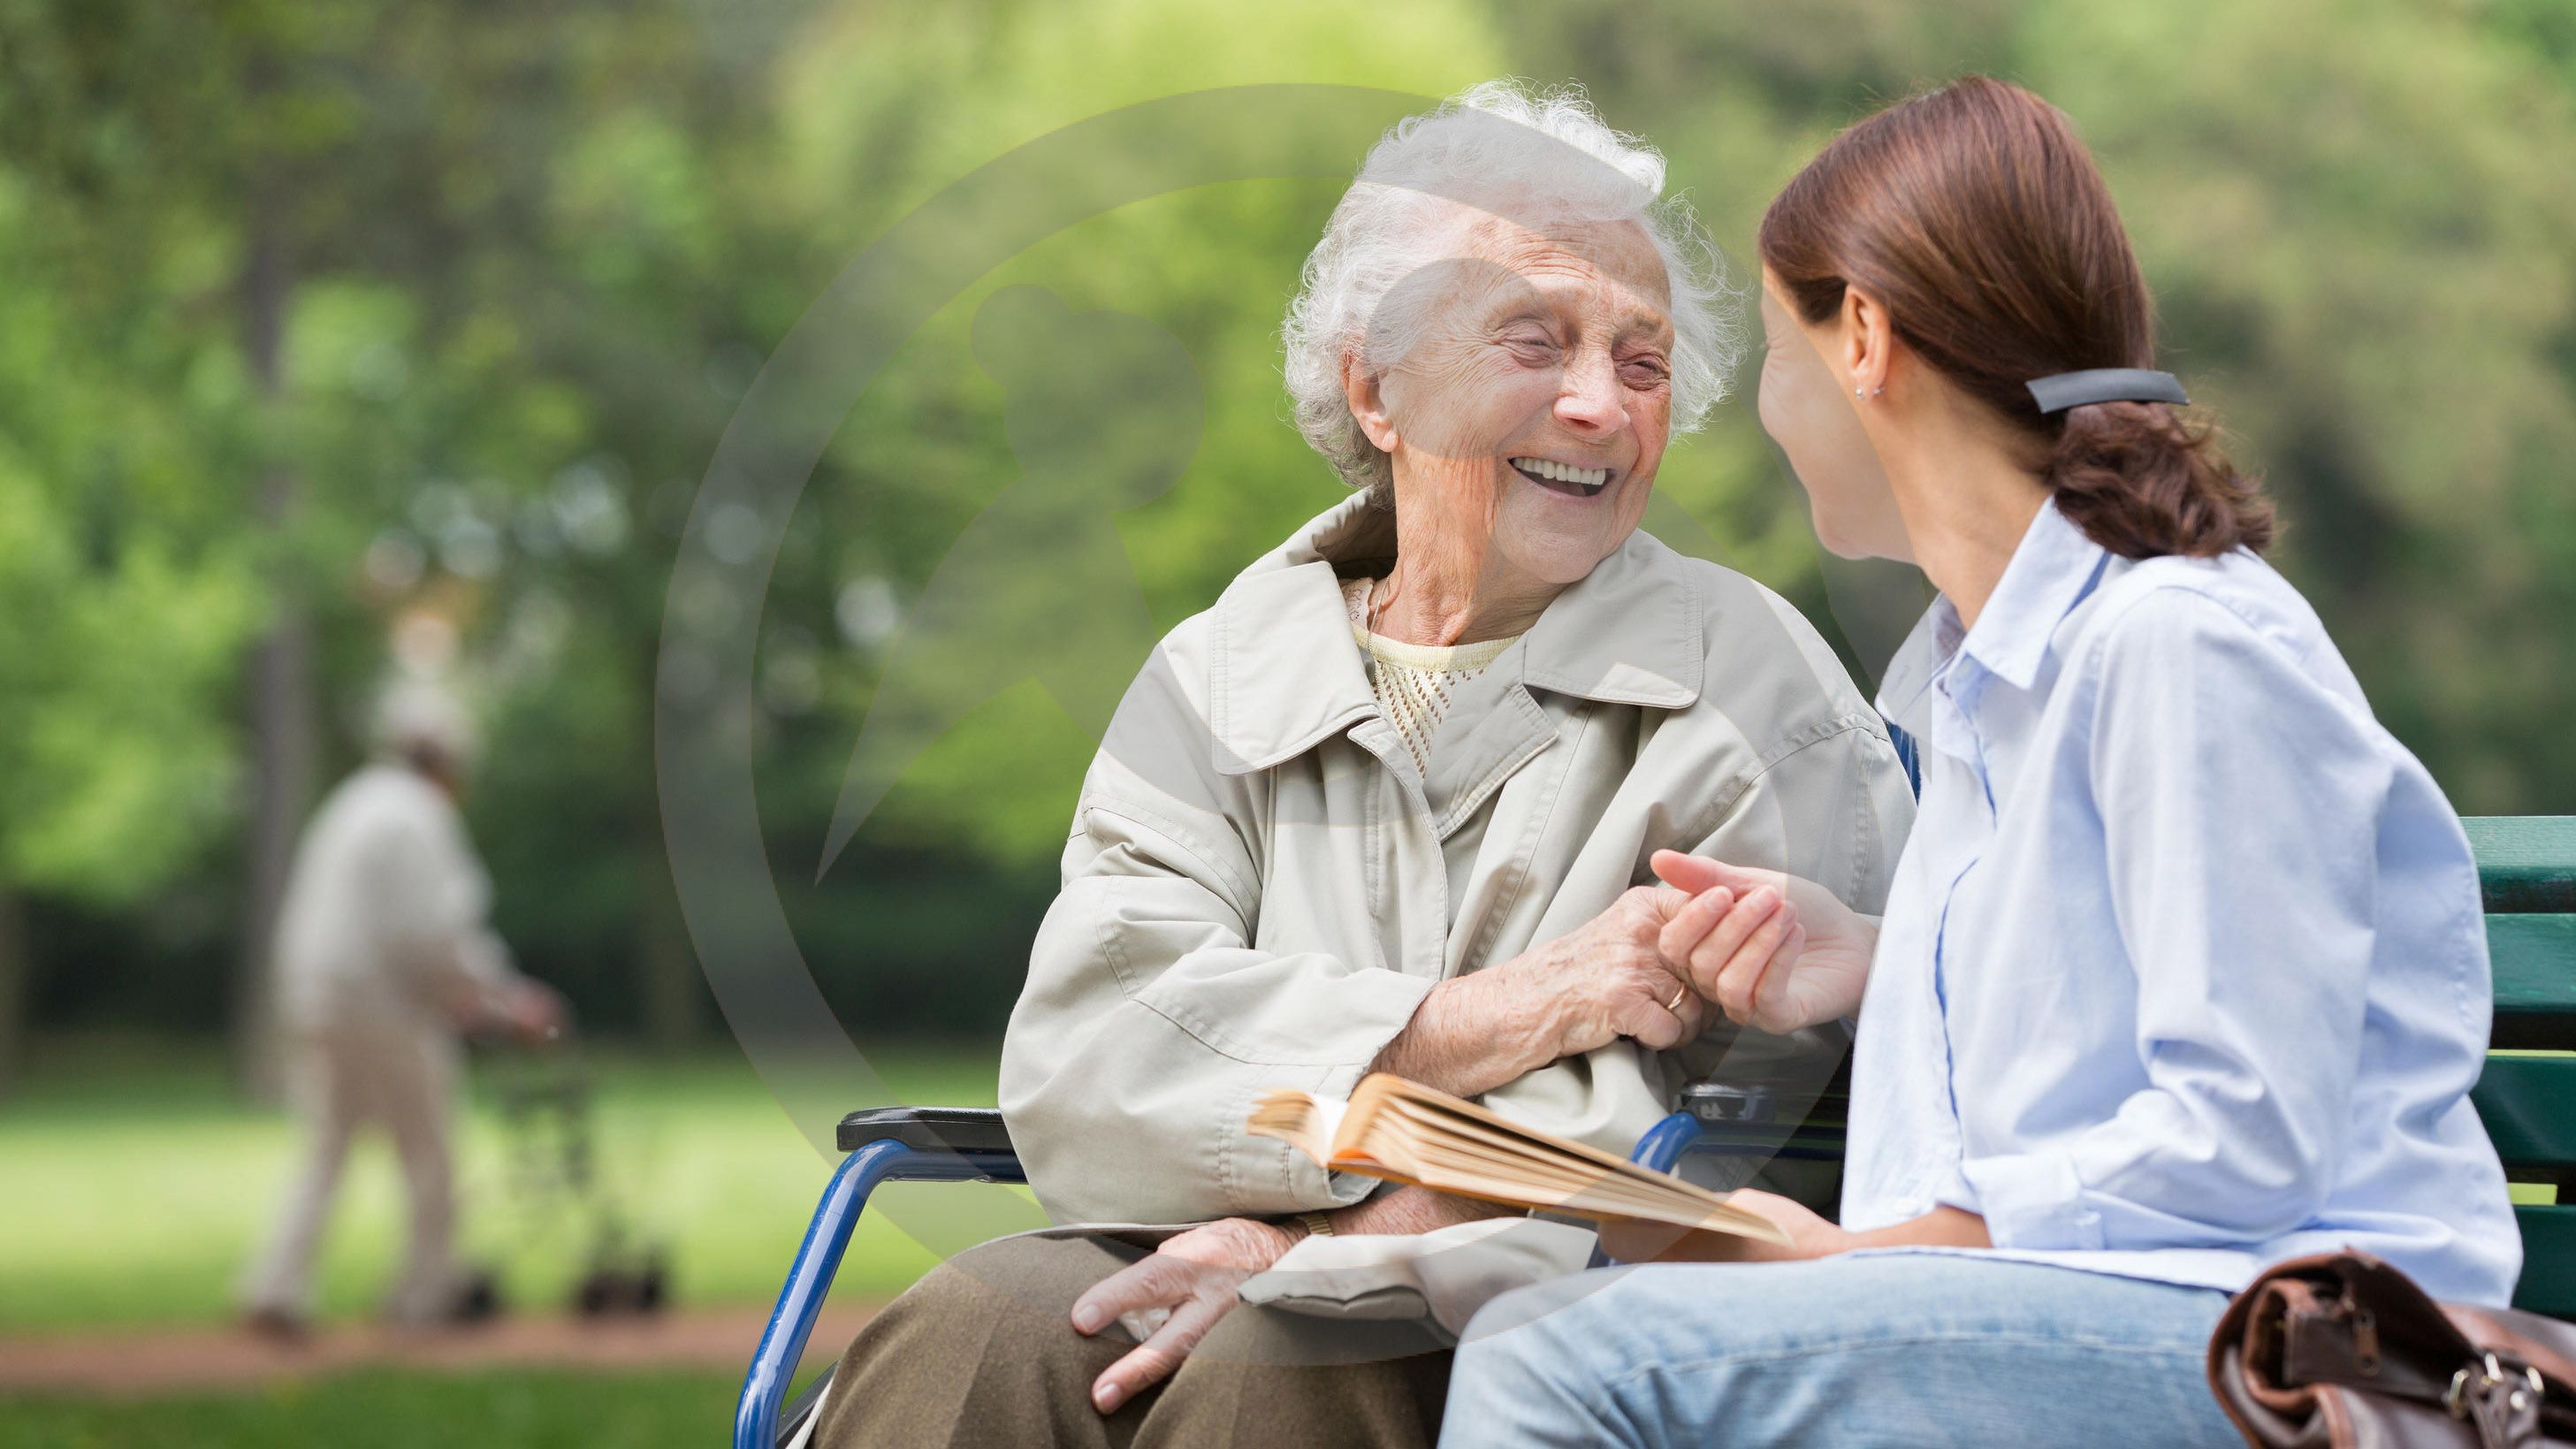 Старость — для избранных: как помочь одиноким дедушкам и бабушкам?